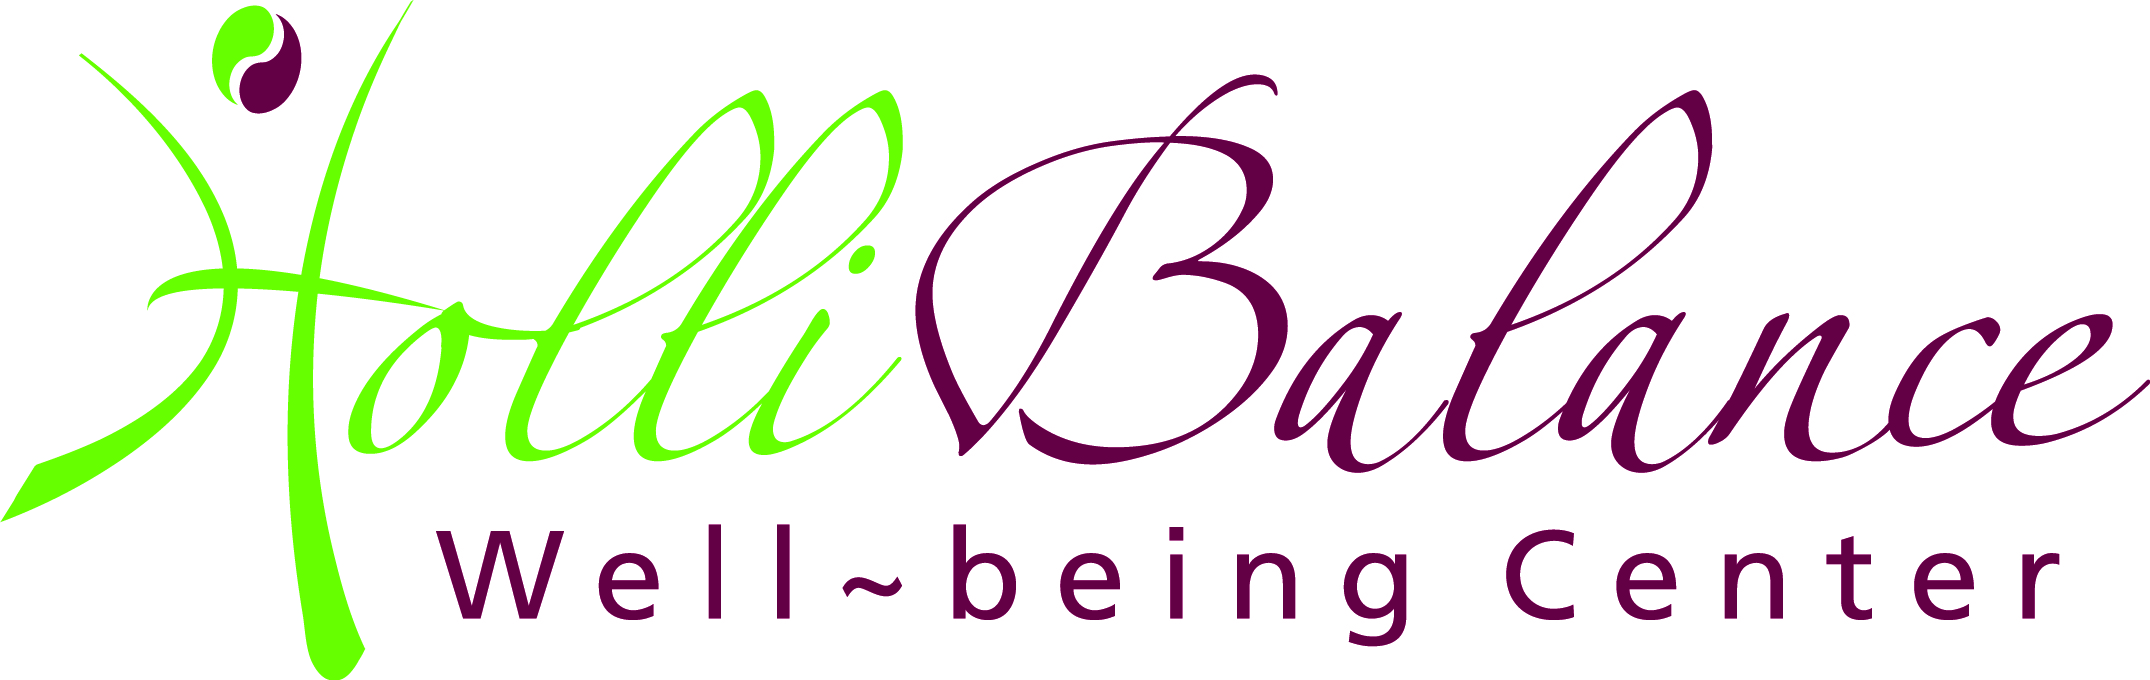 HolliBalance Well-being Center LLC